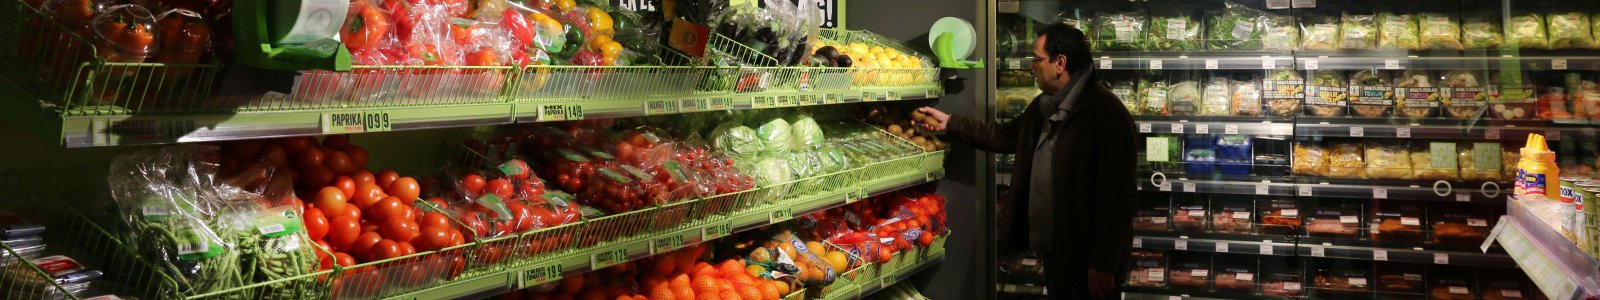 Groente- en fruitafdeling van de supermarkt 